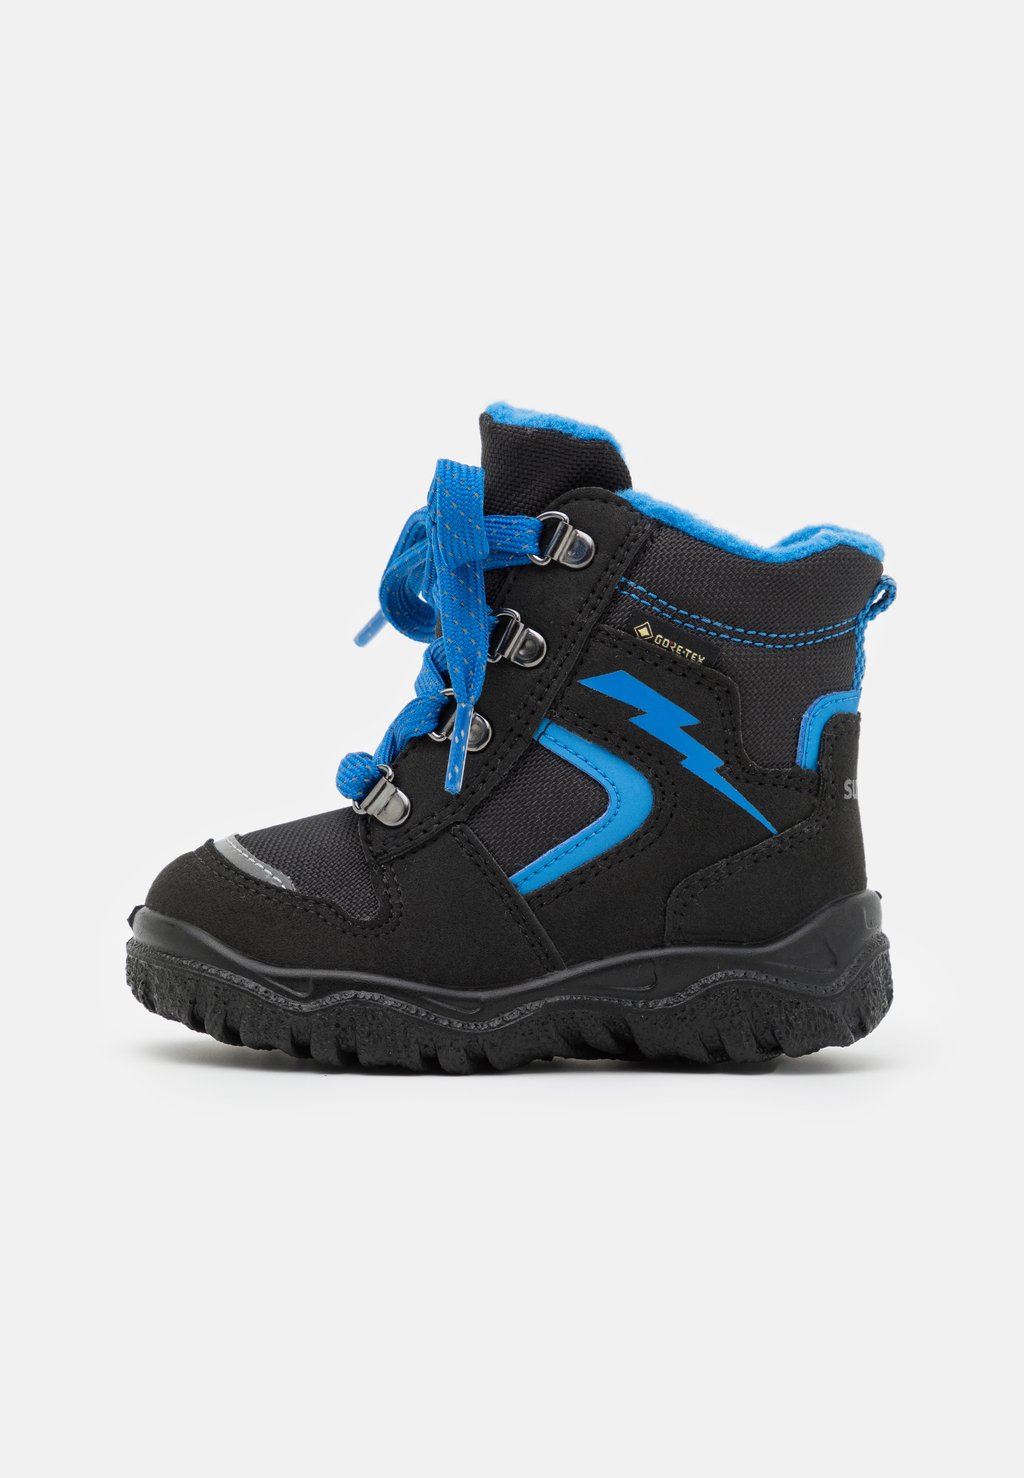 Зимние ботинки/зимние ботинки HUSKY Superfit, цвет schwarz/blau зимние ботинки зимние ботинки husky superfit цвет blau